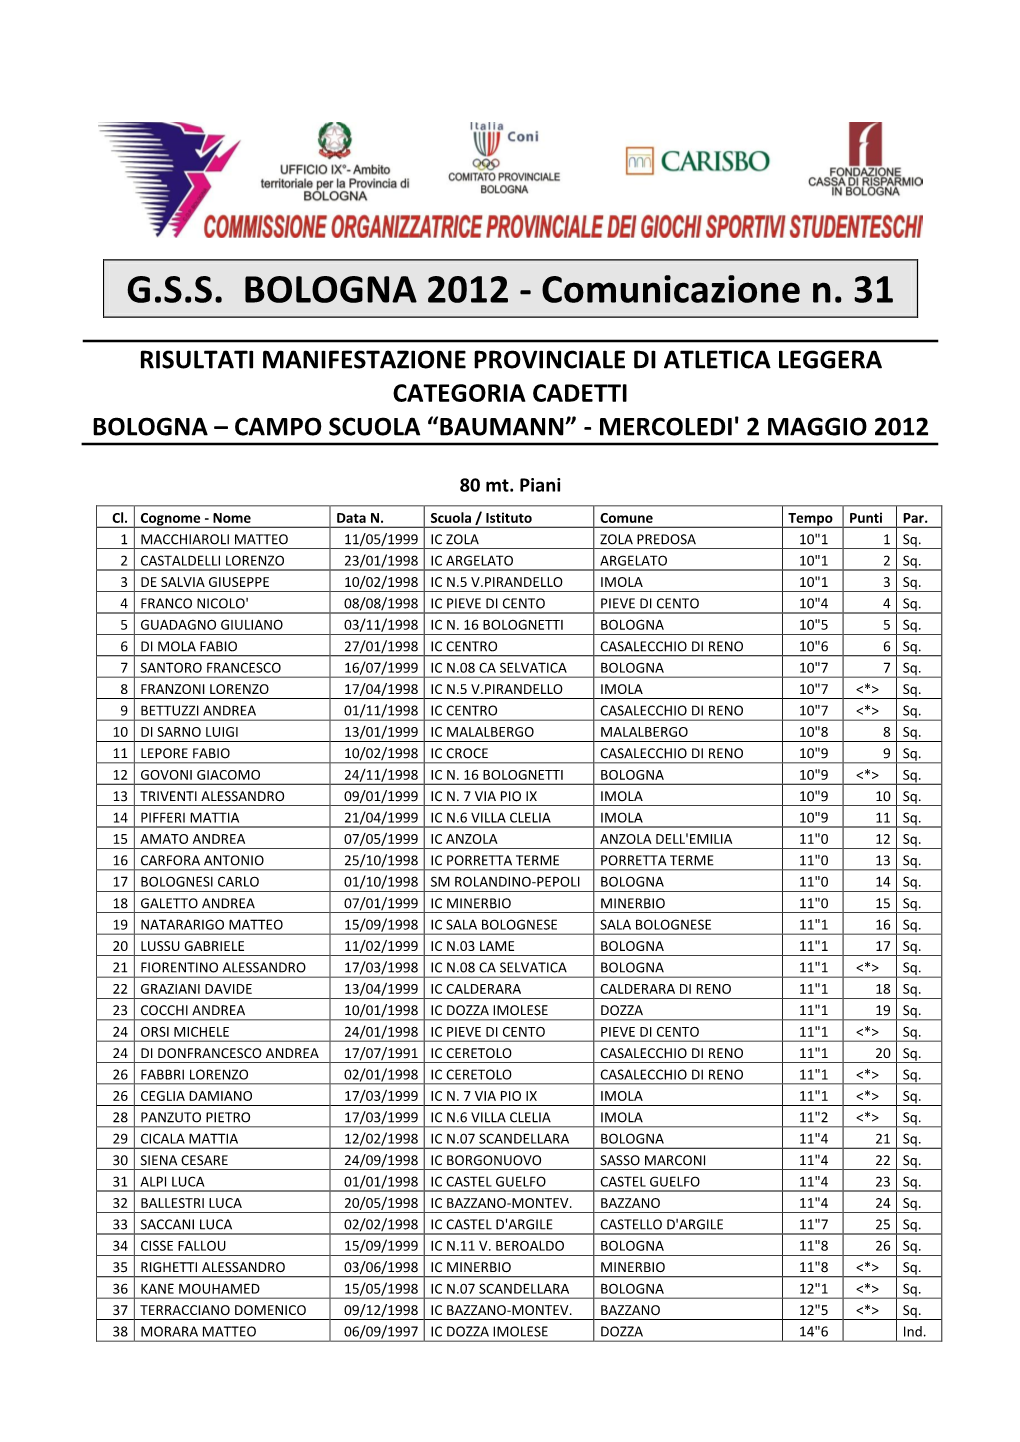 G.S.S. BOLOGNA 2012 - Comunicazione N